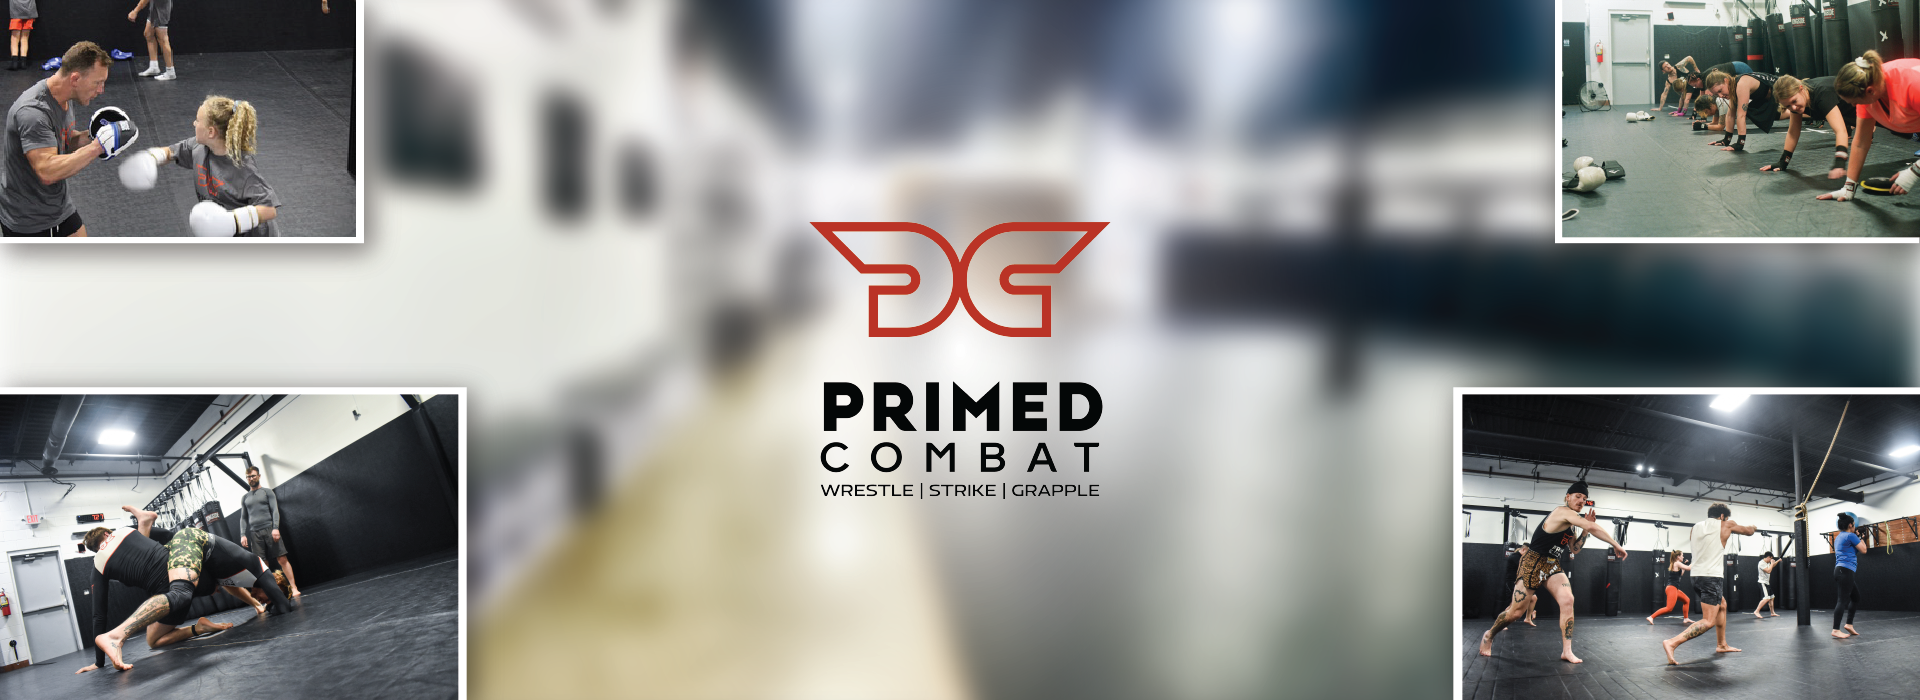 Primed Combat photo